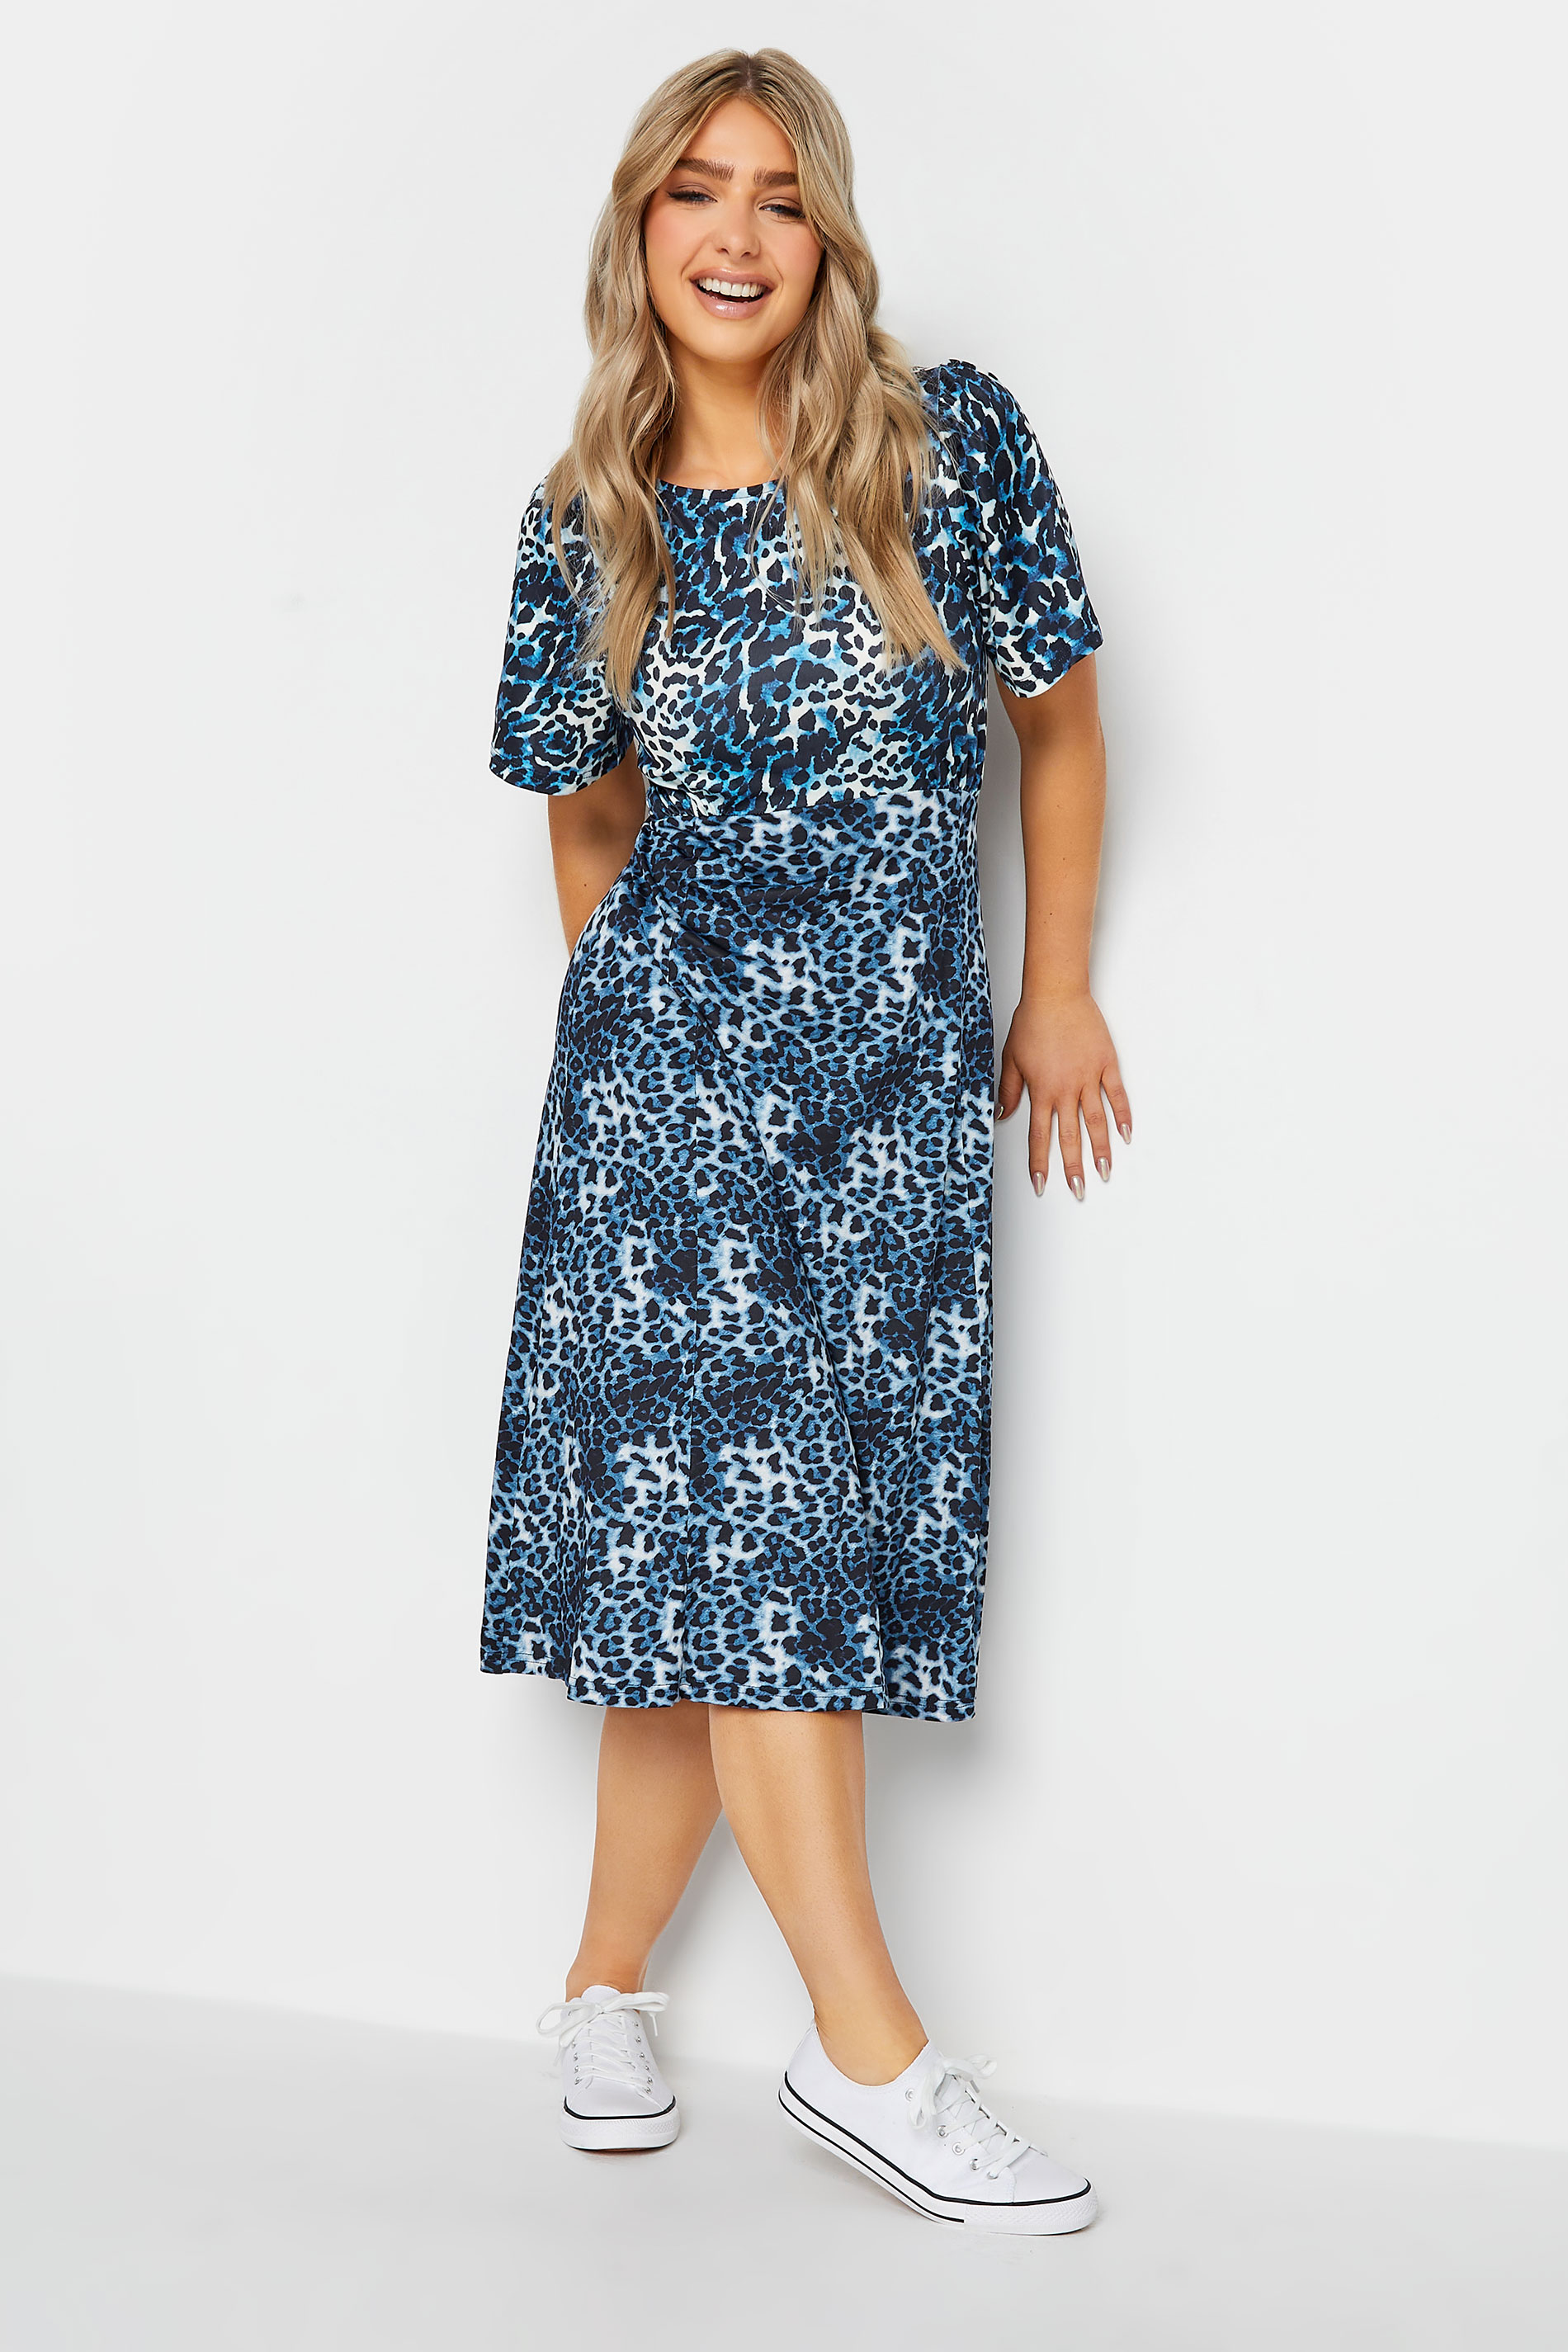 M&Co Blue Leopard Print Midi Dress | M&Co 1